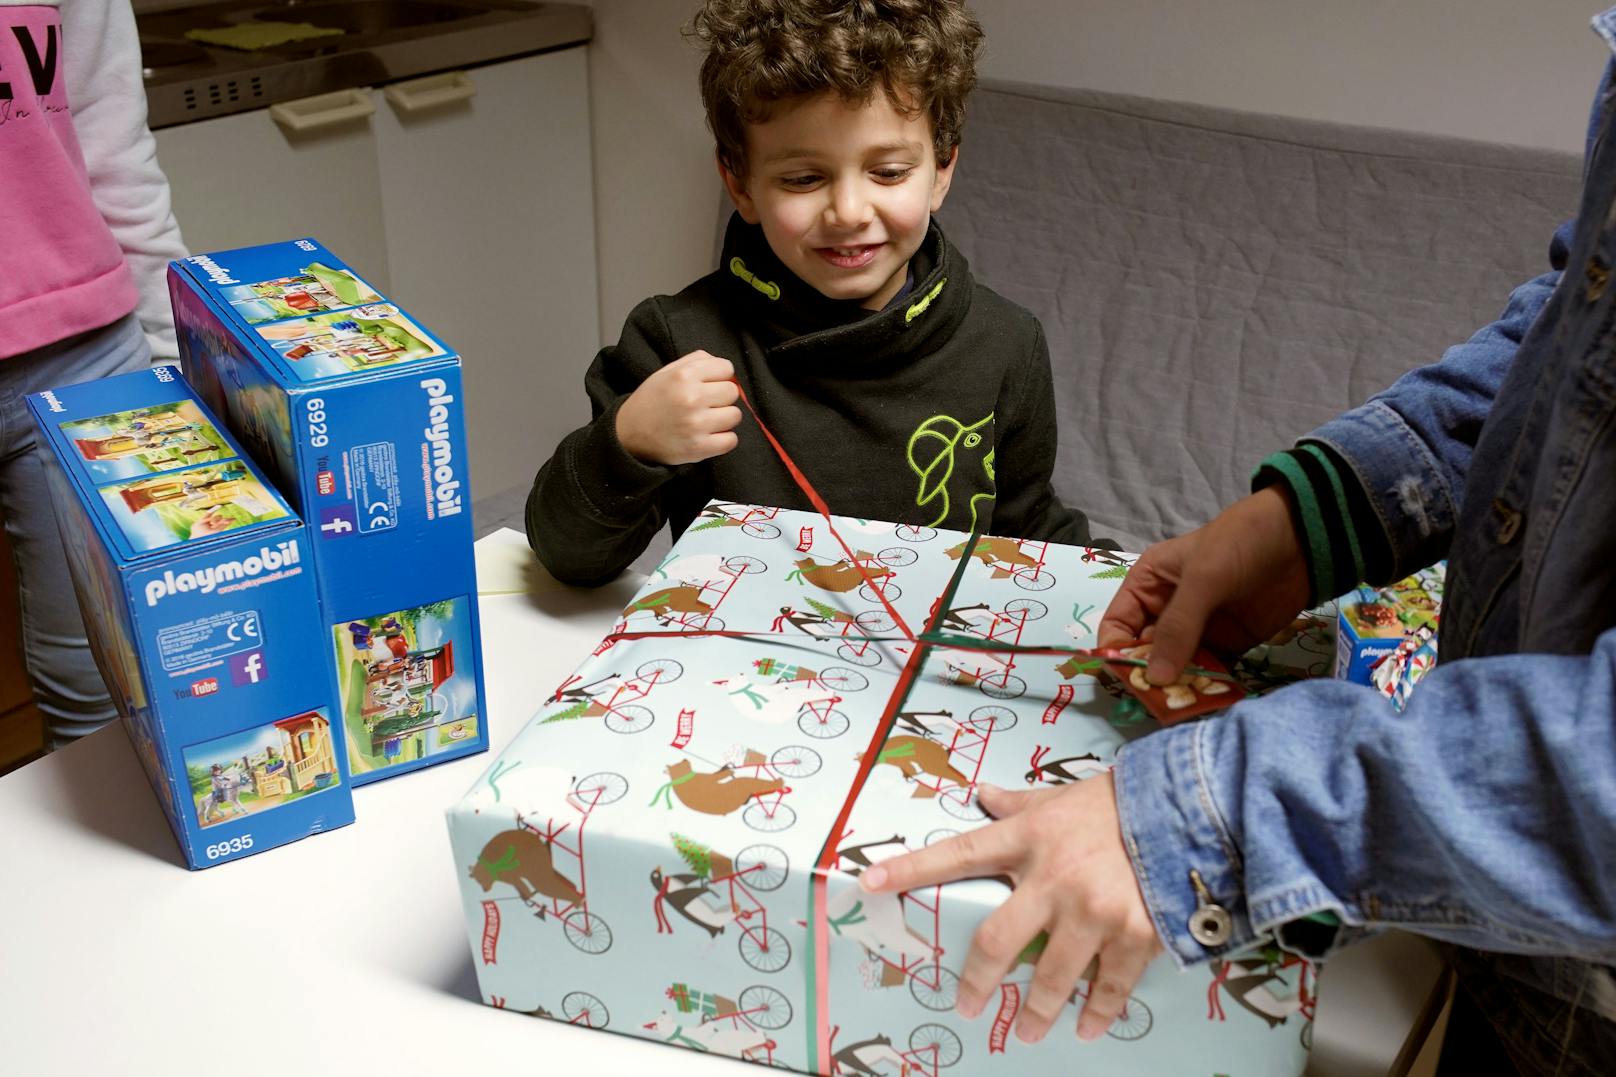 Für viele Familien wird das Weihnachtsfest heuer zur finanziellen Herausforderung. Bei Obdach Wien sollen die Kids sich trotzdem über Geschenke freuen.